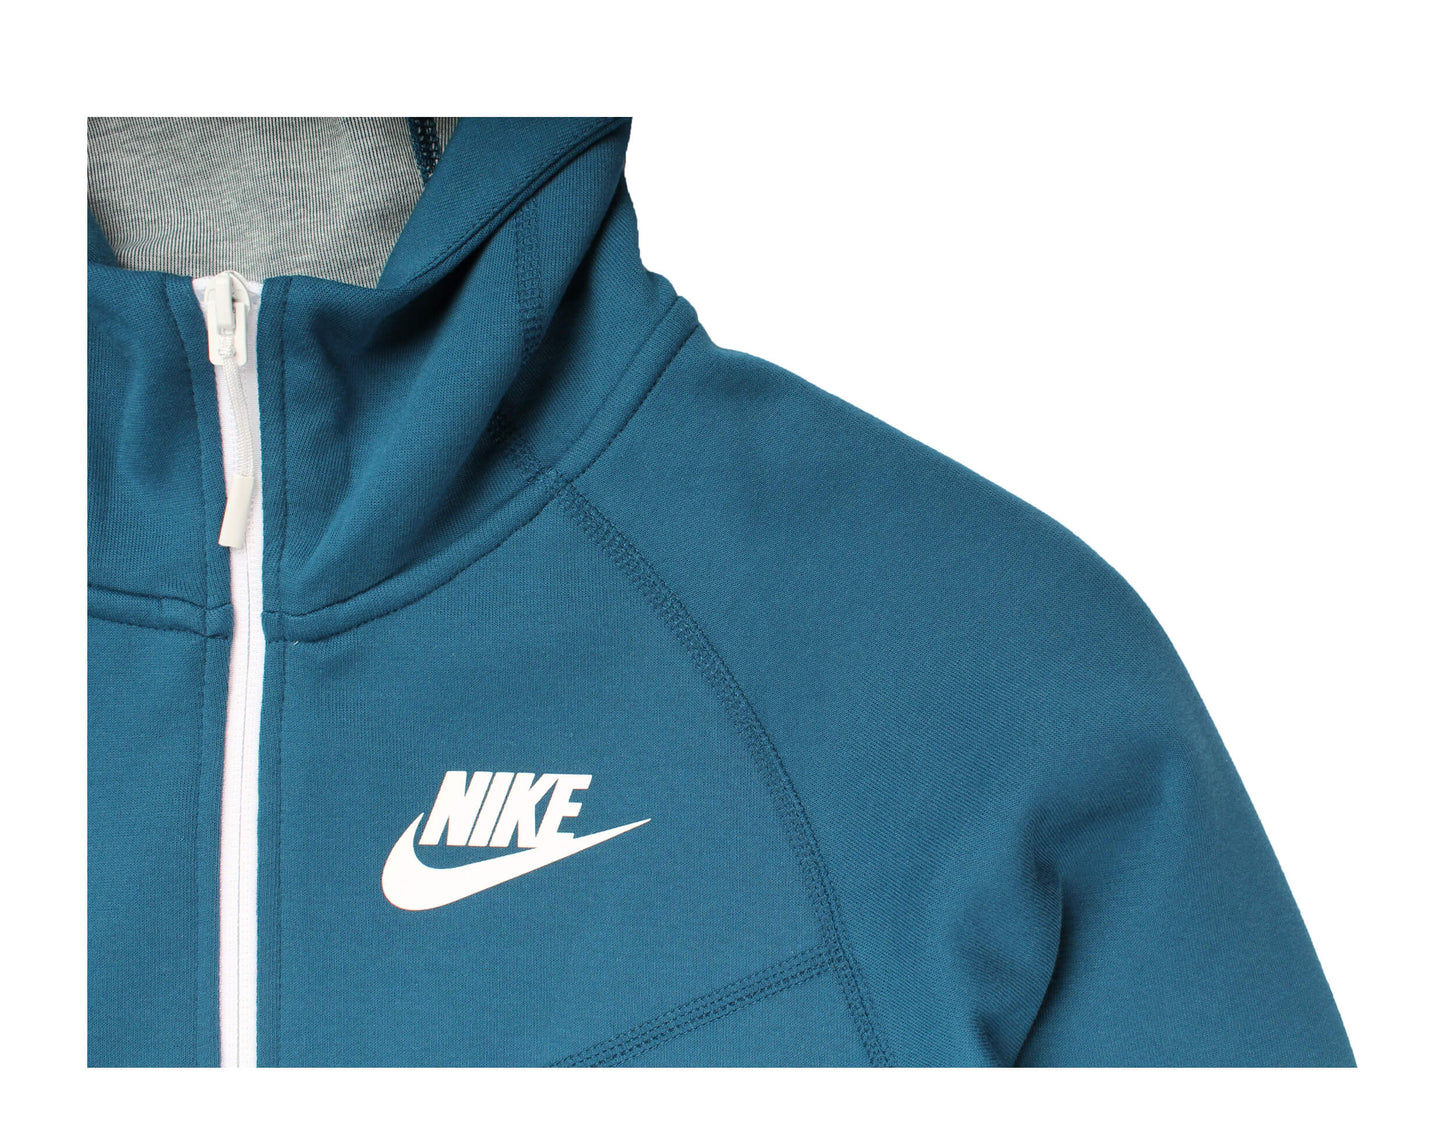 Nike NSW Tech Fleece F/Z Windrunner Blue Force/White Women's Hoodie 930759-474